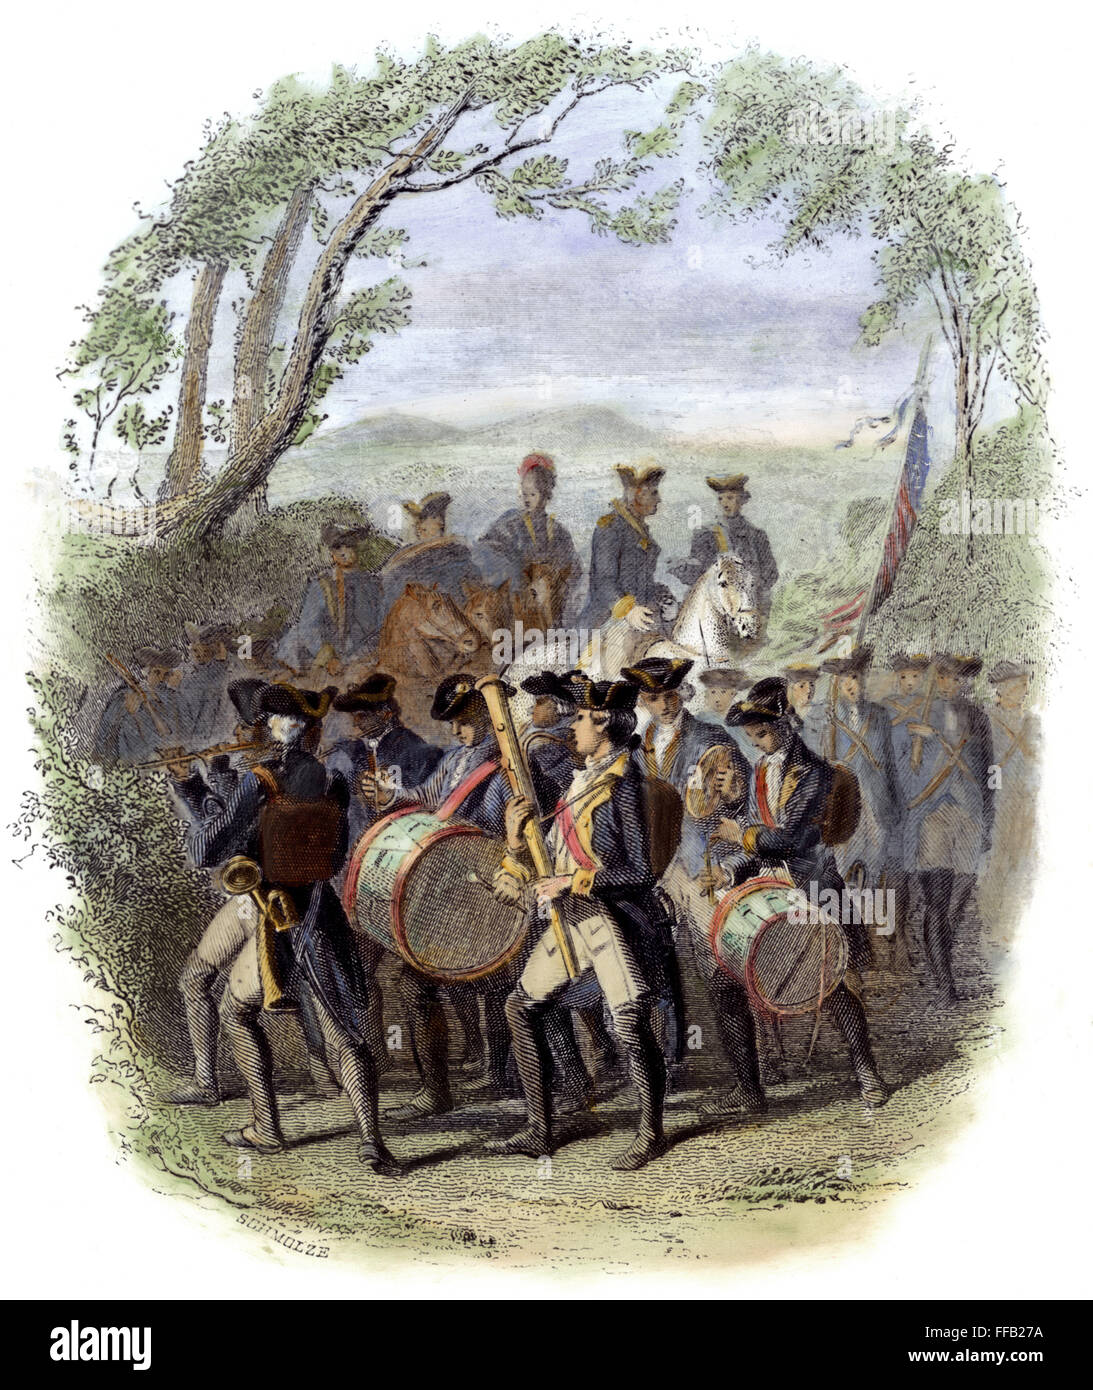 Bande armée continentale. /NMarching band dans l'armée continentale durant la guerre d'Indépendance américaine. Gravure couleur, c1850, par Karl Hermann Schmolze. Banque D'Images